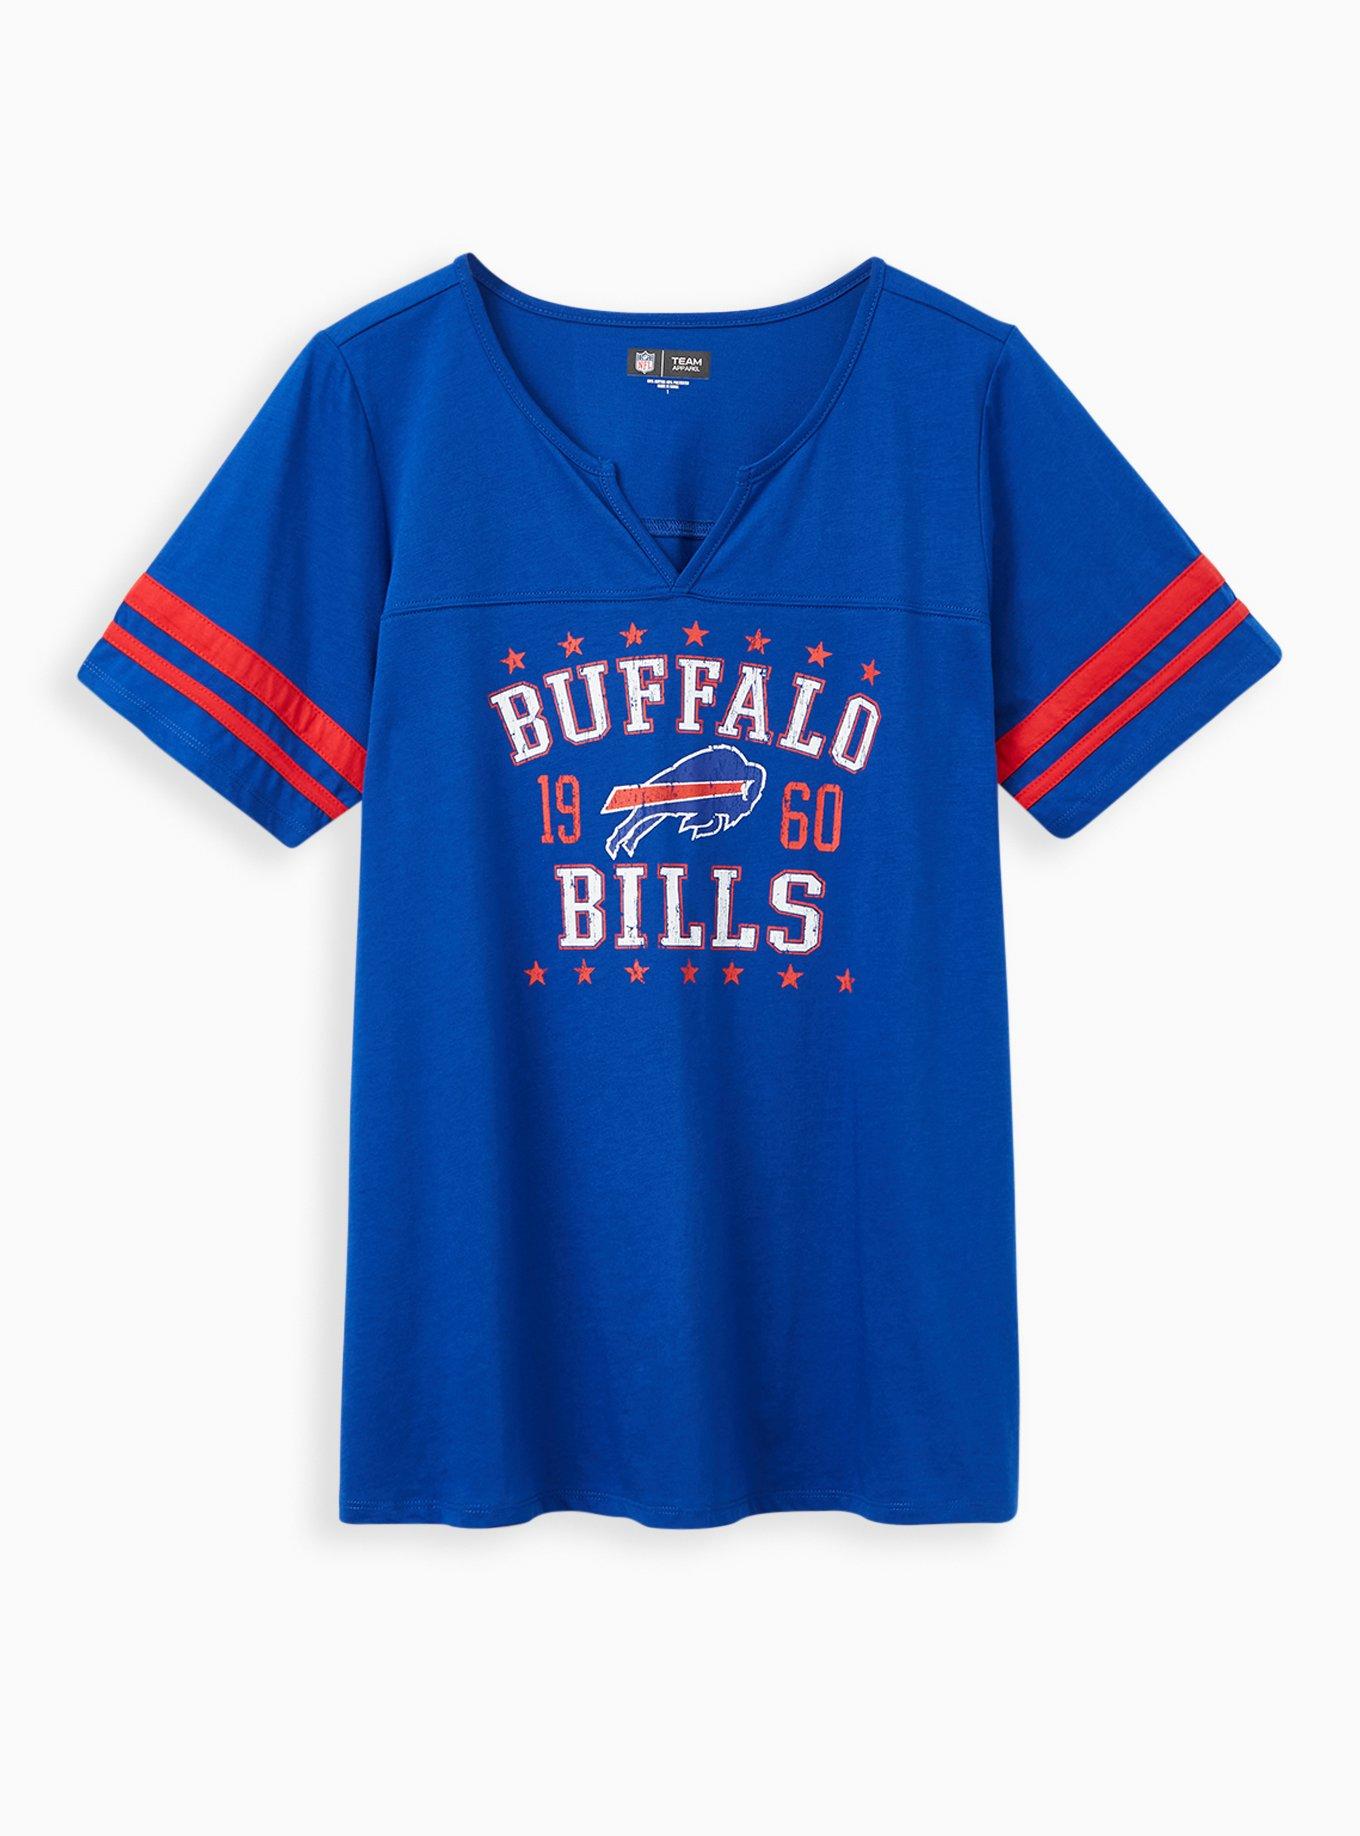 Plus Size - Classic Fit Football Tee - NFL Buffalo Bills Blue - Torrid